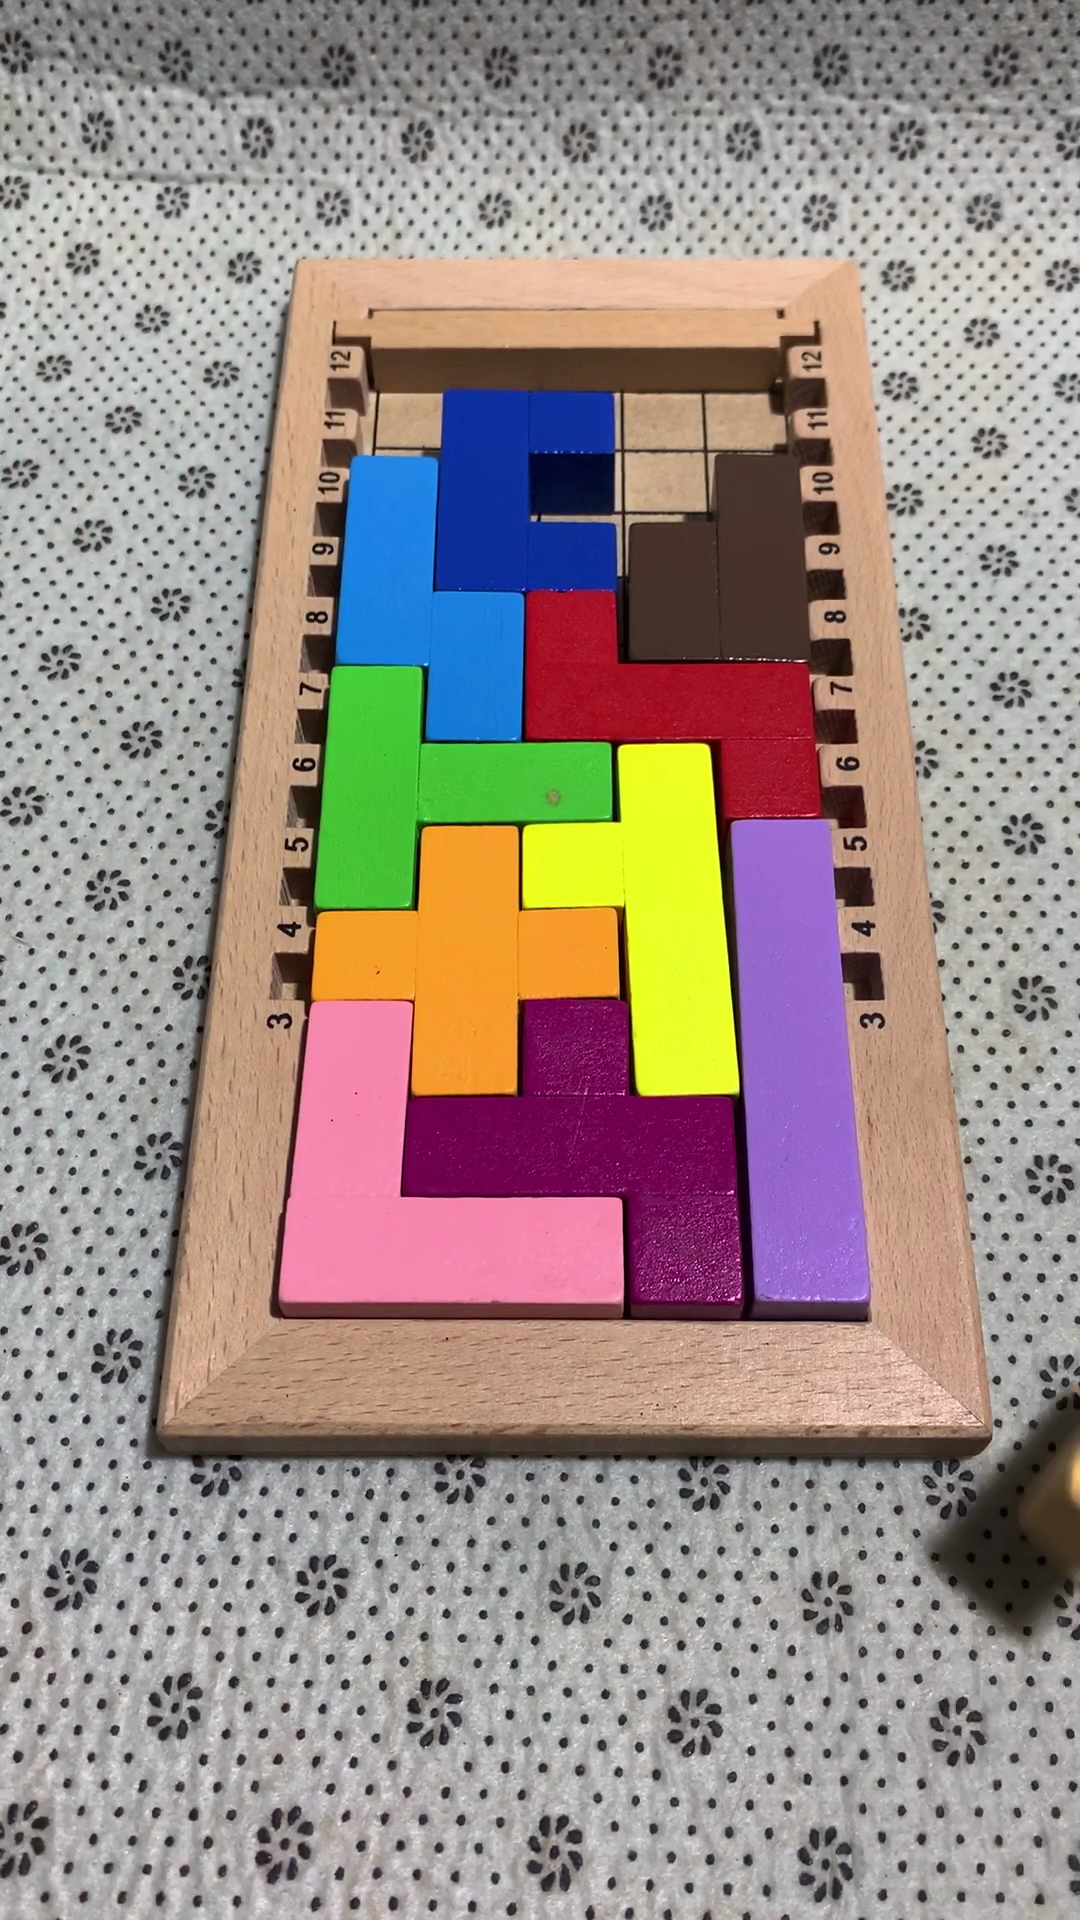 方块之谜平面攻略图册图片